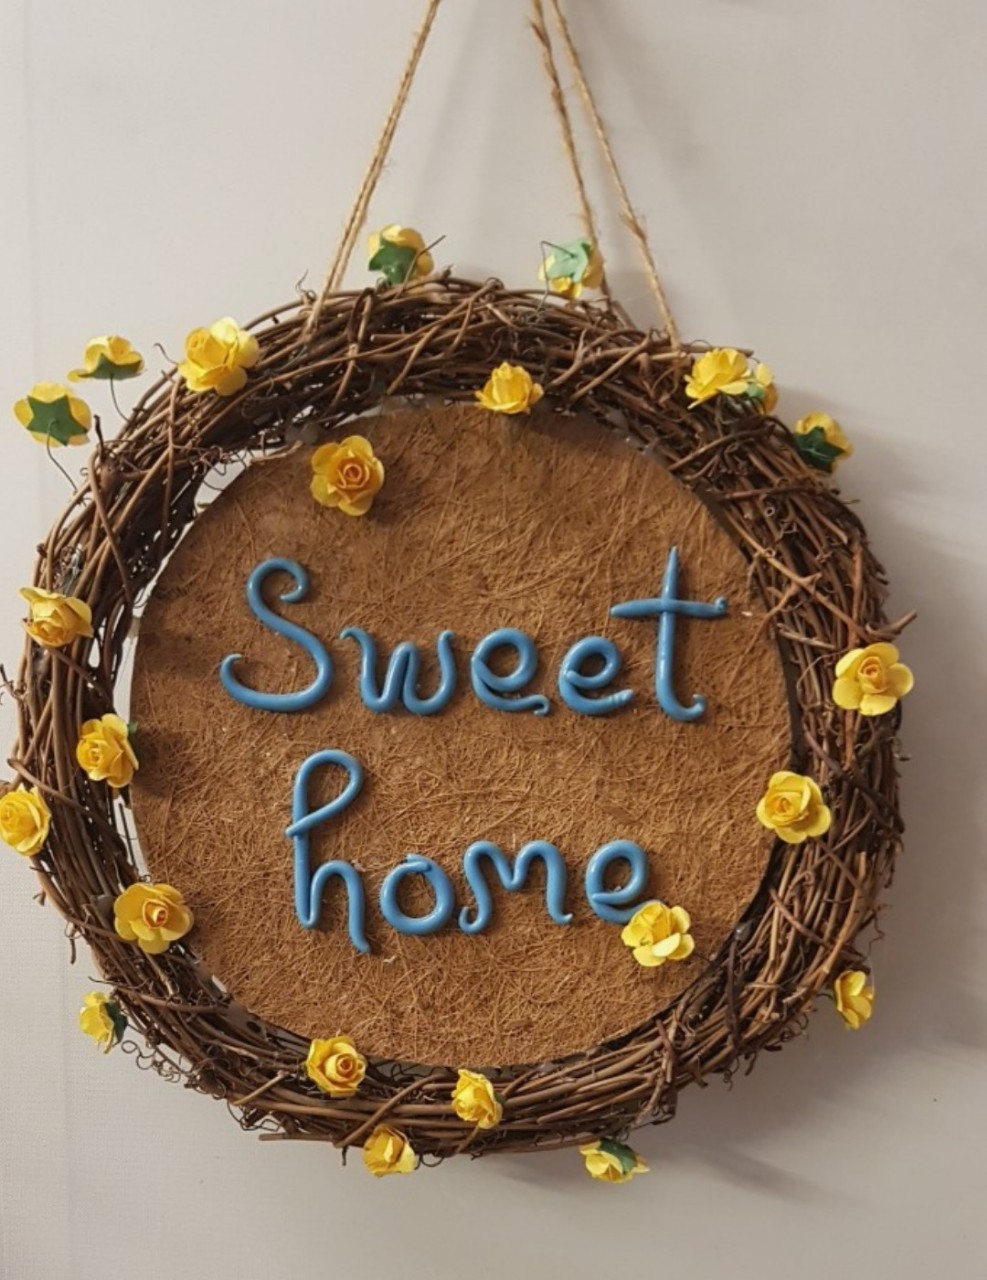 Vòng hoa trang trí, vòng hoa gỗ kết hợp cùng thông điệp "Sweet Home", phụ kiện trang trí nhà cửa xinh xắn. Món quà dễ thương dành tặng  bạn bè, người thân. Giao từ HCM